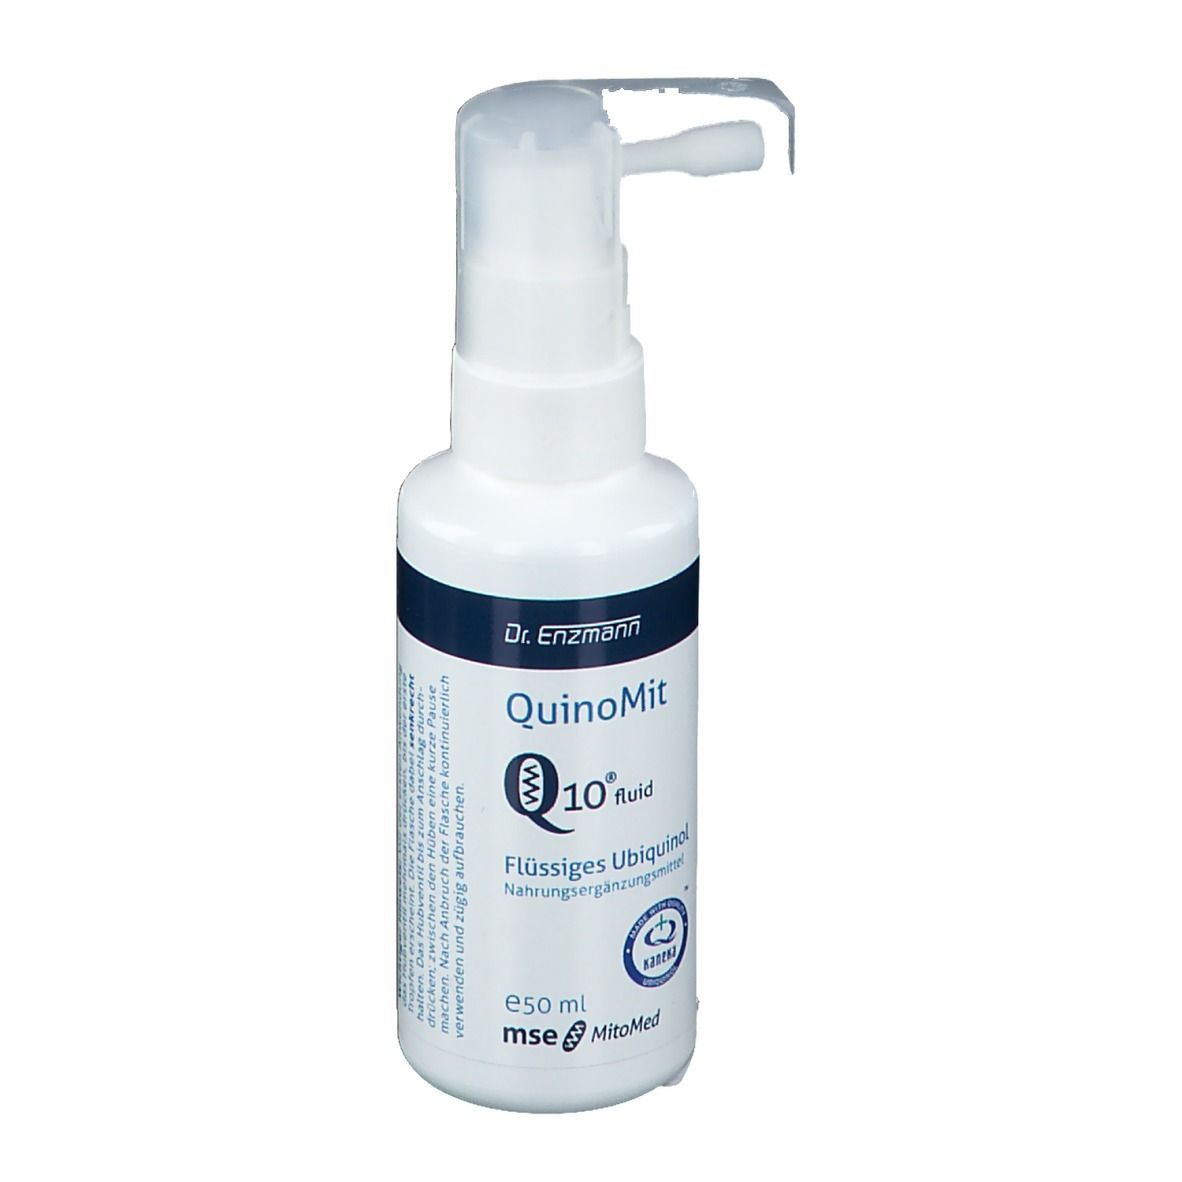 QuinoMit Q10® fluid